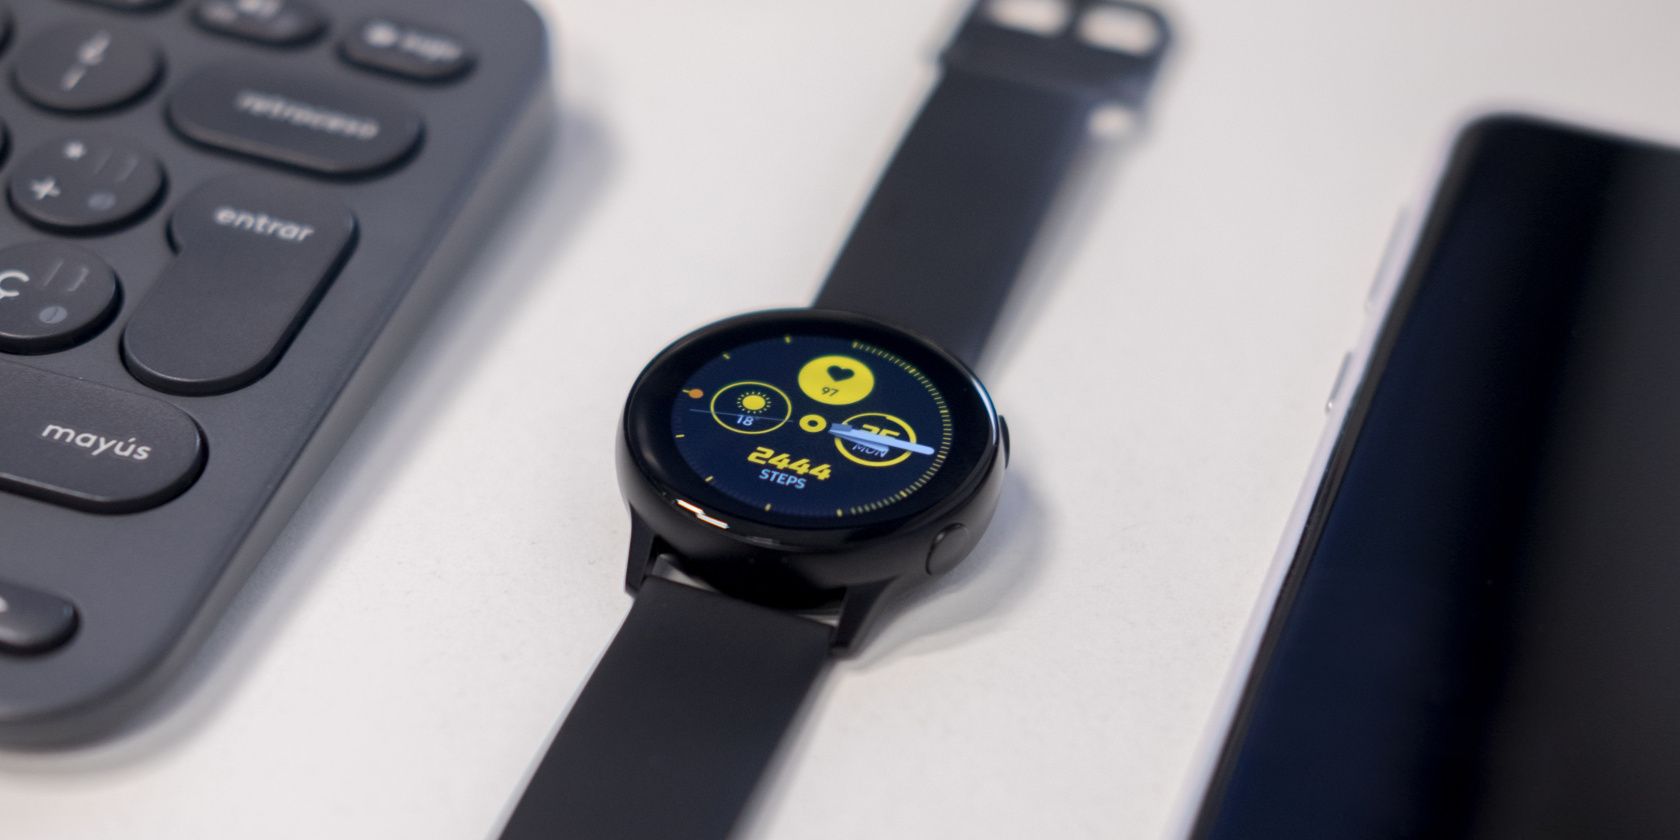 a Samsung Galaxy Watch on a desk